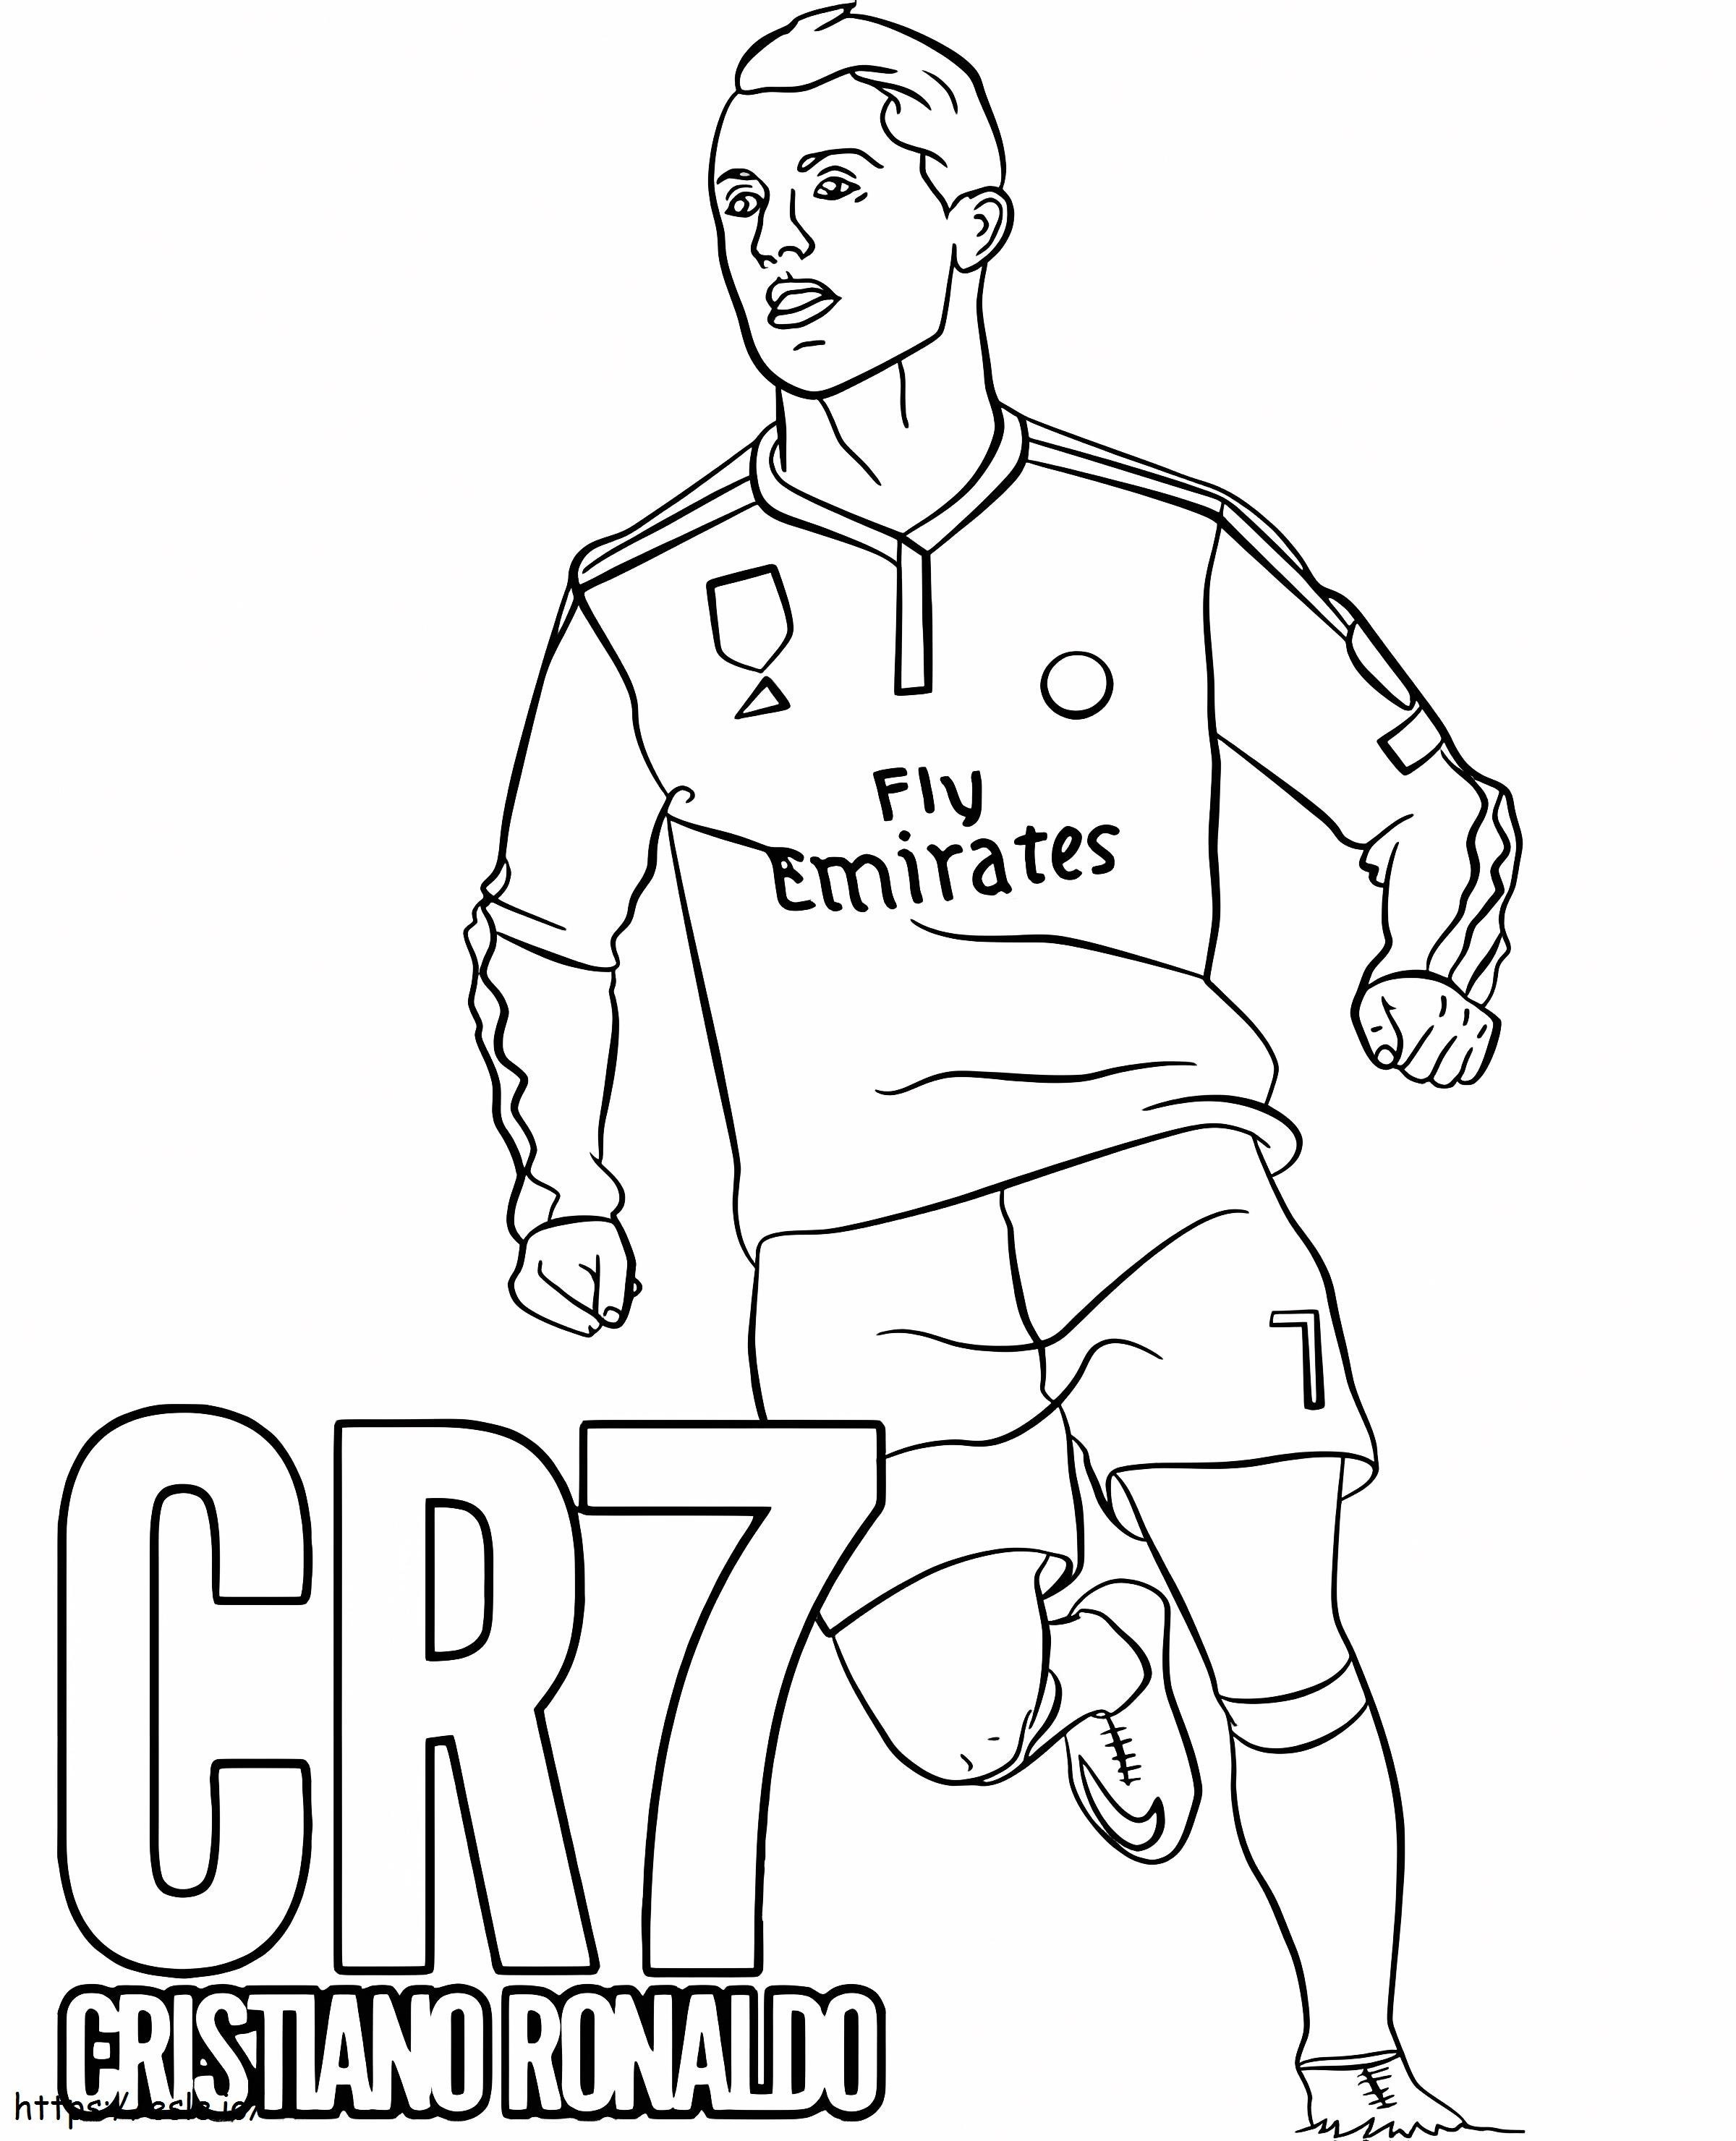 Cristiano Ronaldo Run coloring page